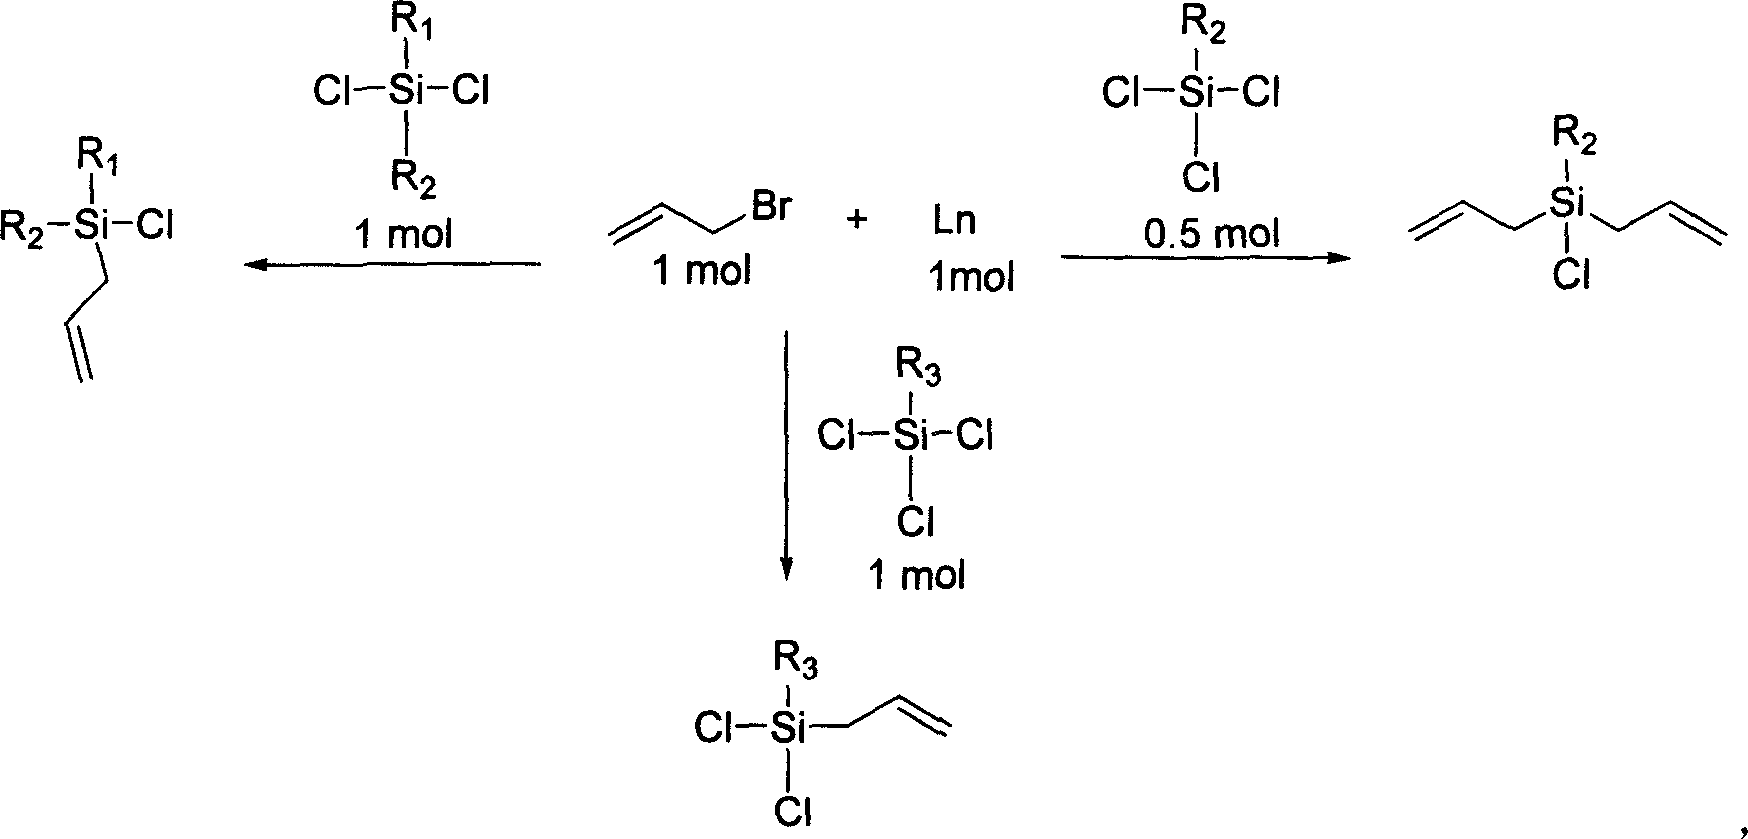 Process for preparing allyl chlorosilane